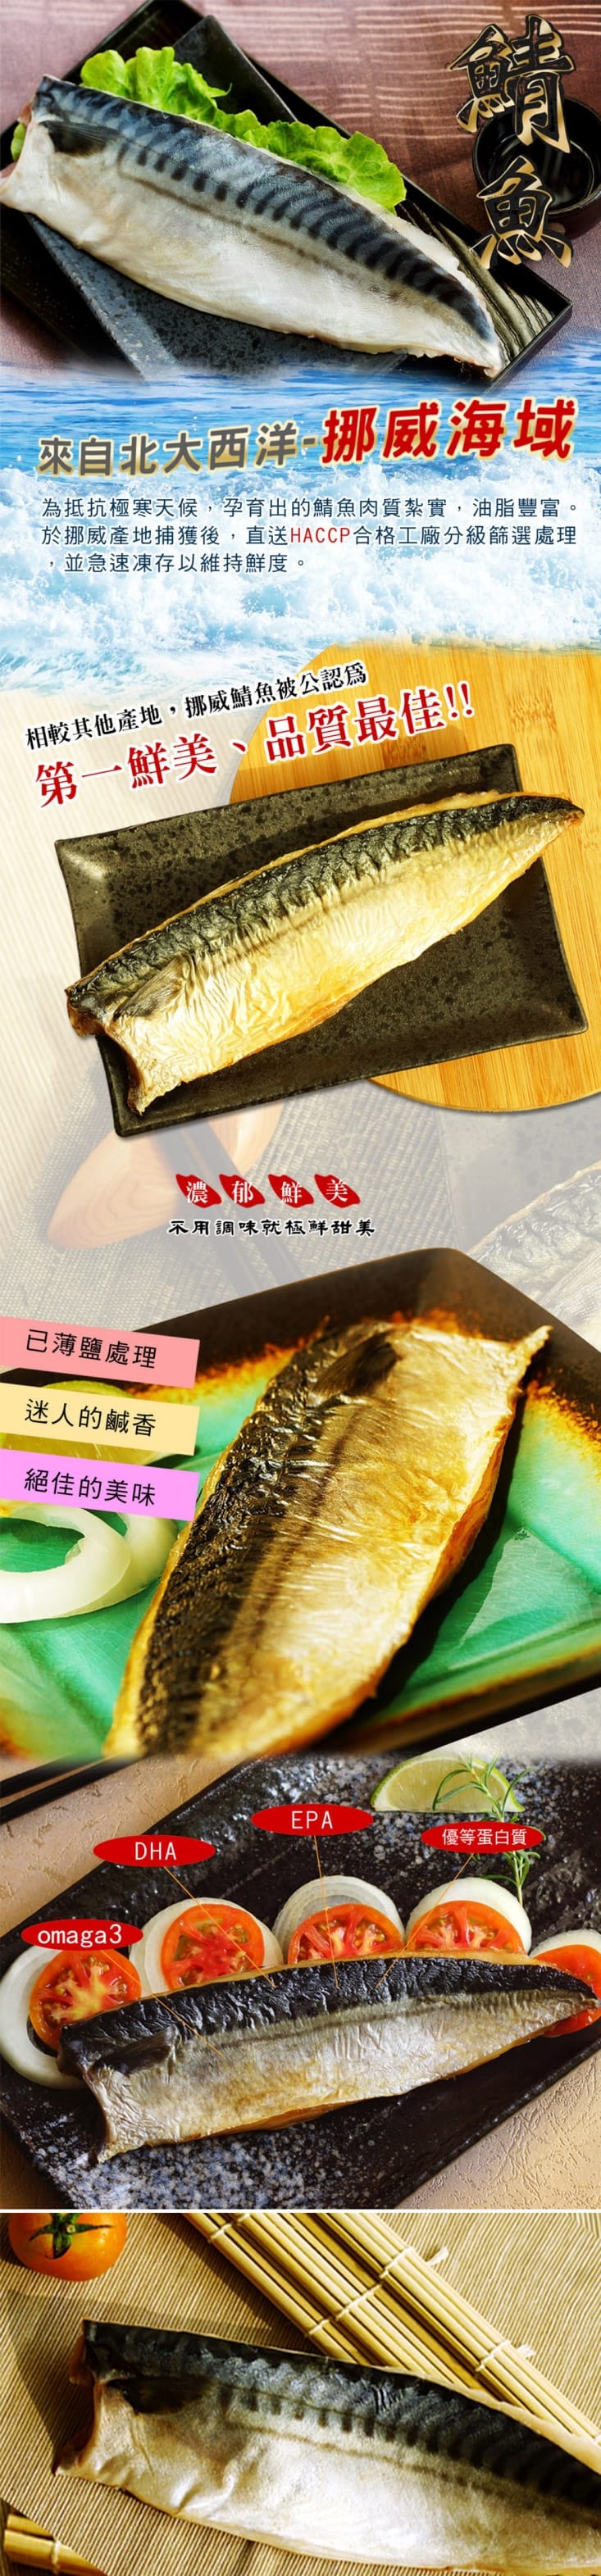       【海之醇】挪威薄鹽鯖魚-17片組(180g±10%/片)